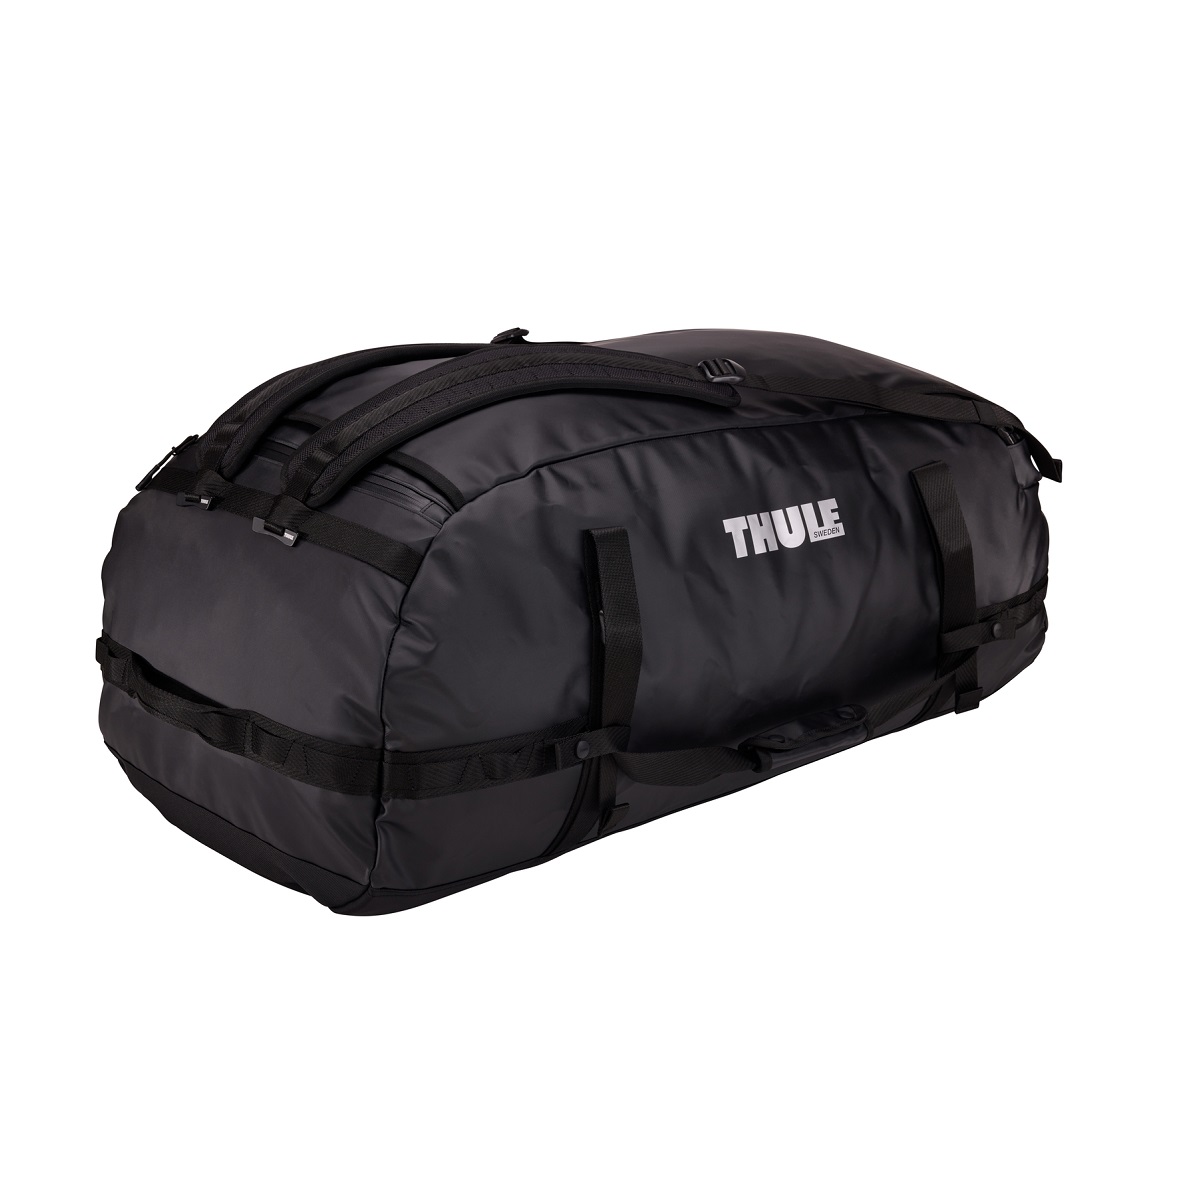 Sportska/putna torba i ruksak 2u1 Thule Chasm 130 L - crna